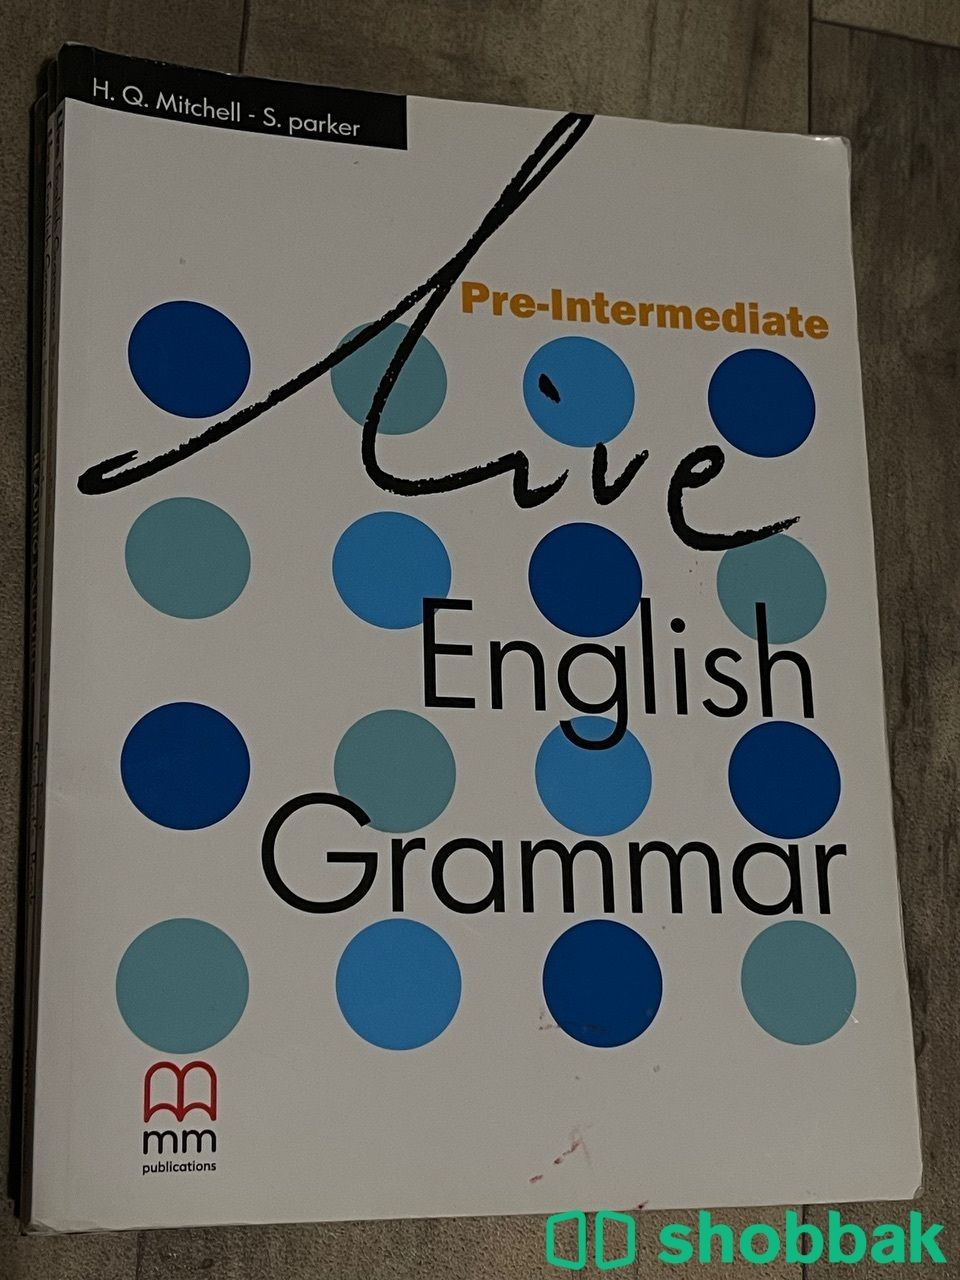 English grammar pre-intermediate Shobbak Saudi Arabia